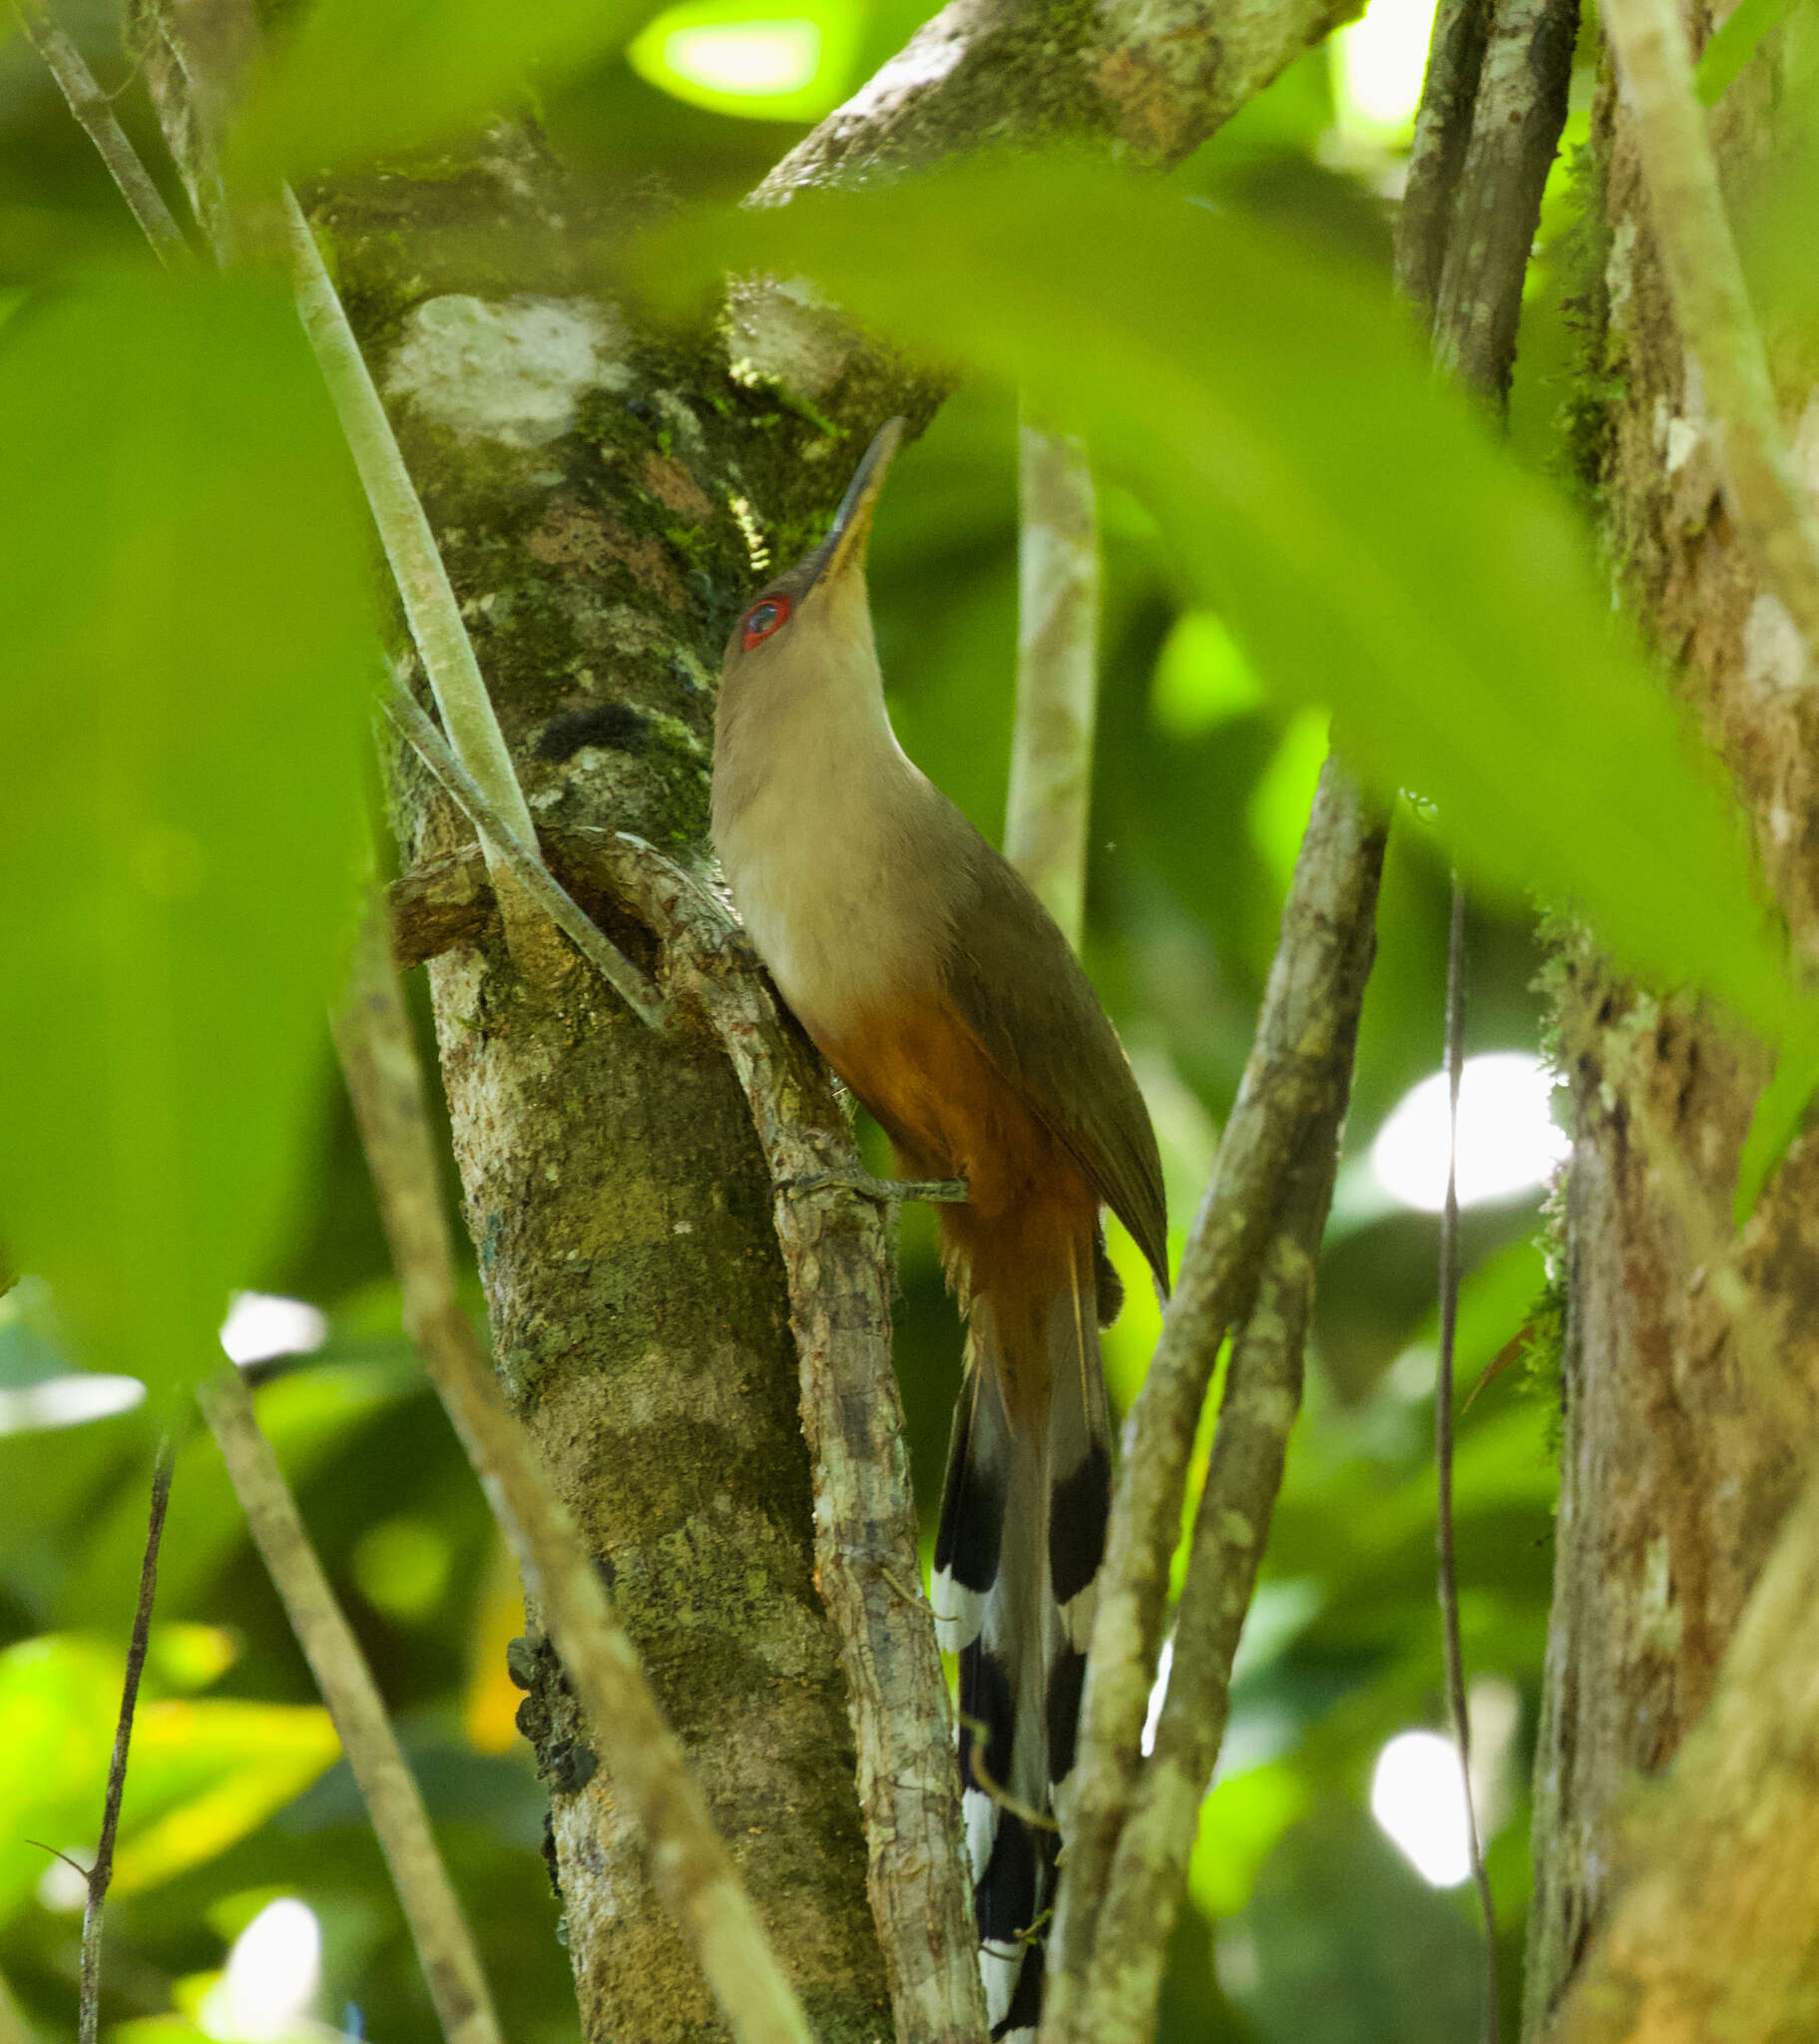 Image of Puerto Rican Lizard Cuckoo